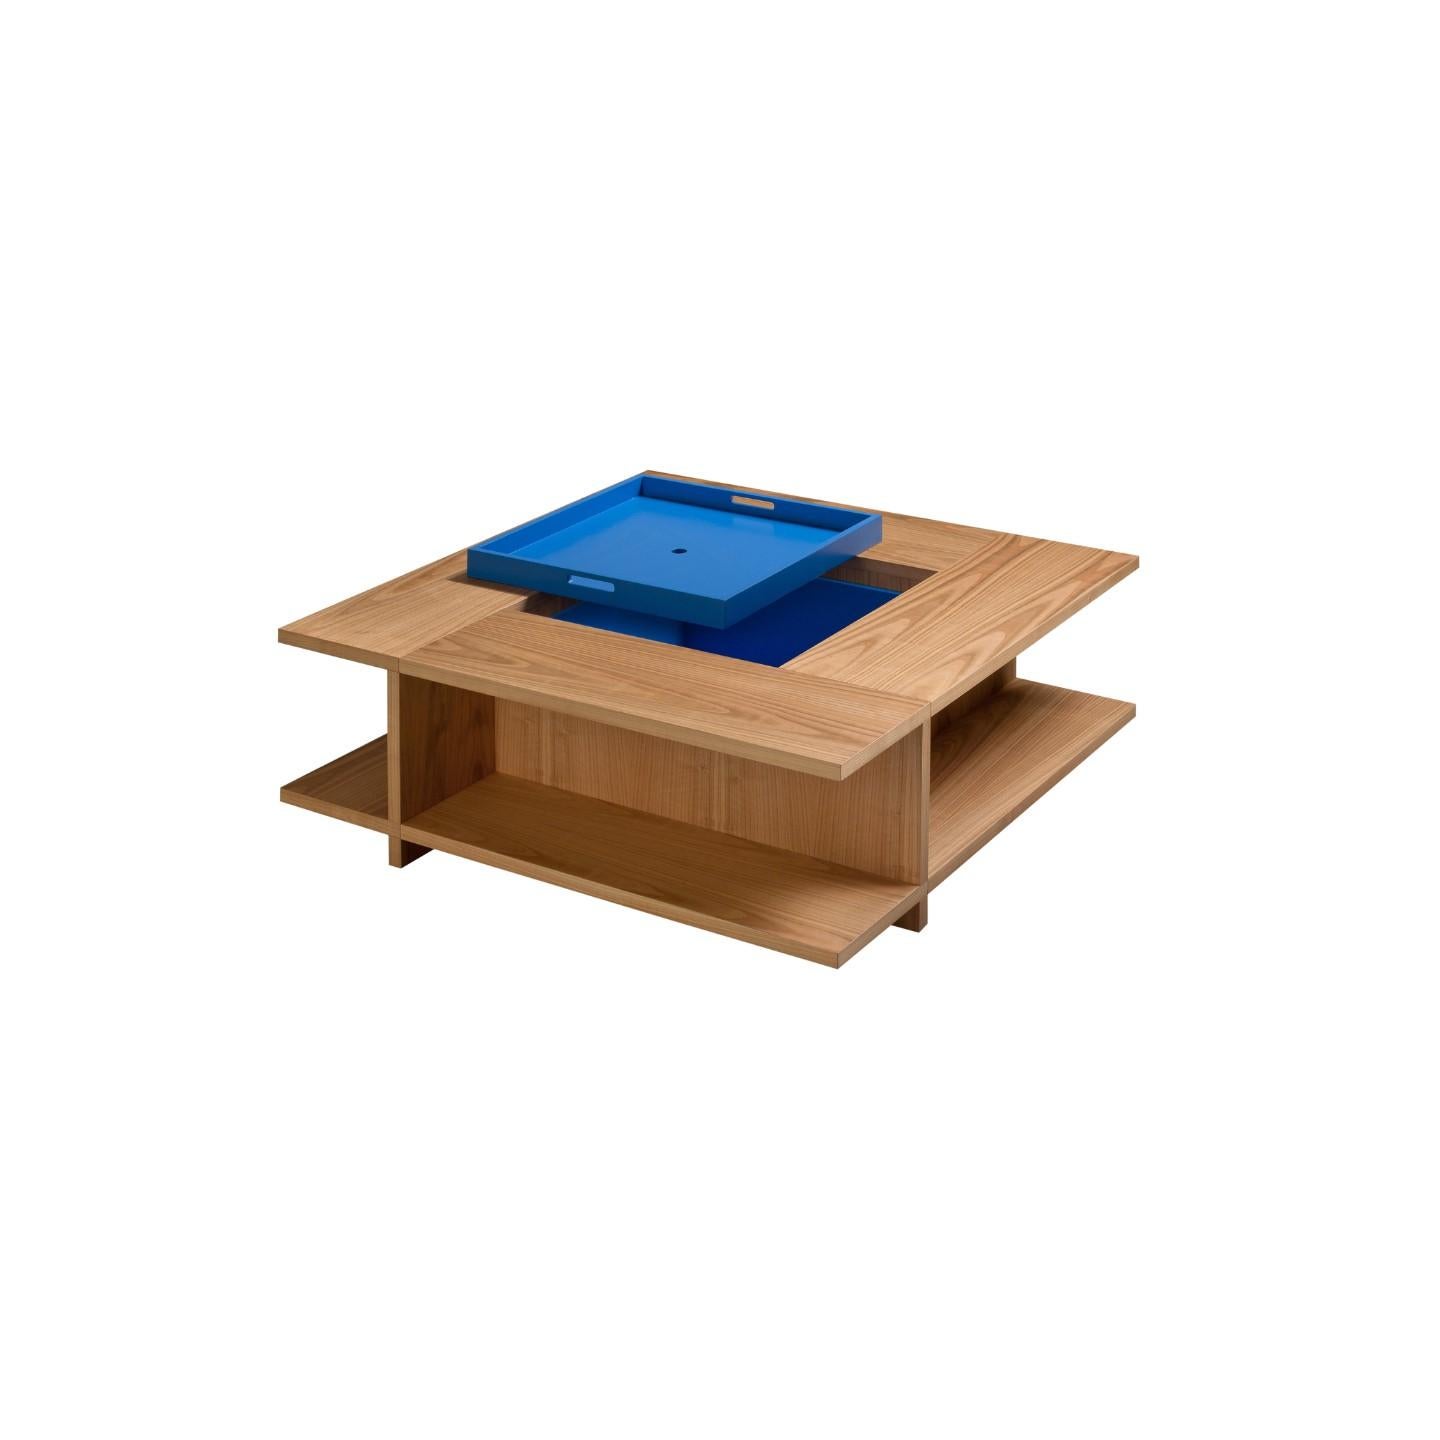 Petite table basse en merisier à utiliser comme bibliothèque.
Compartiment interne fermé par un plateau amovible.
Disponible en différentes finitions.
 
 
  